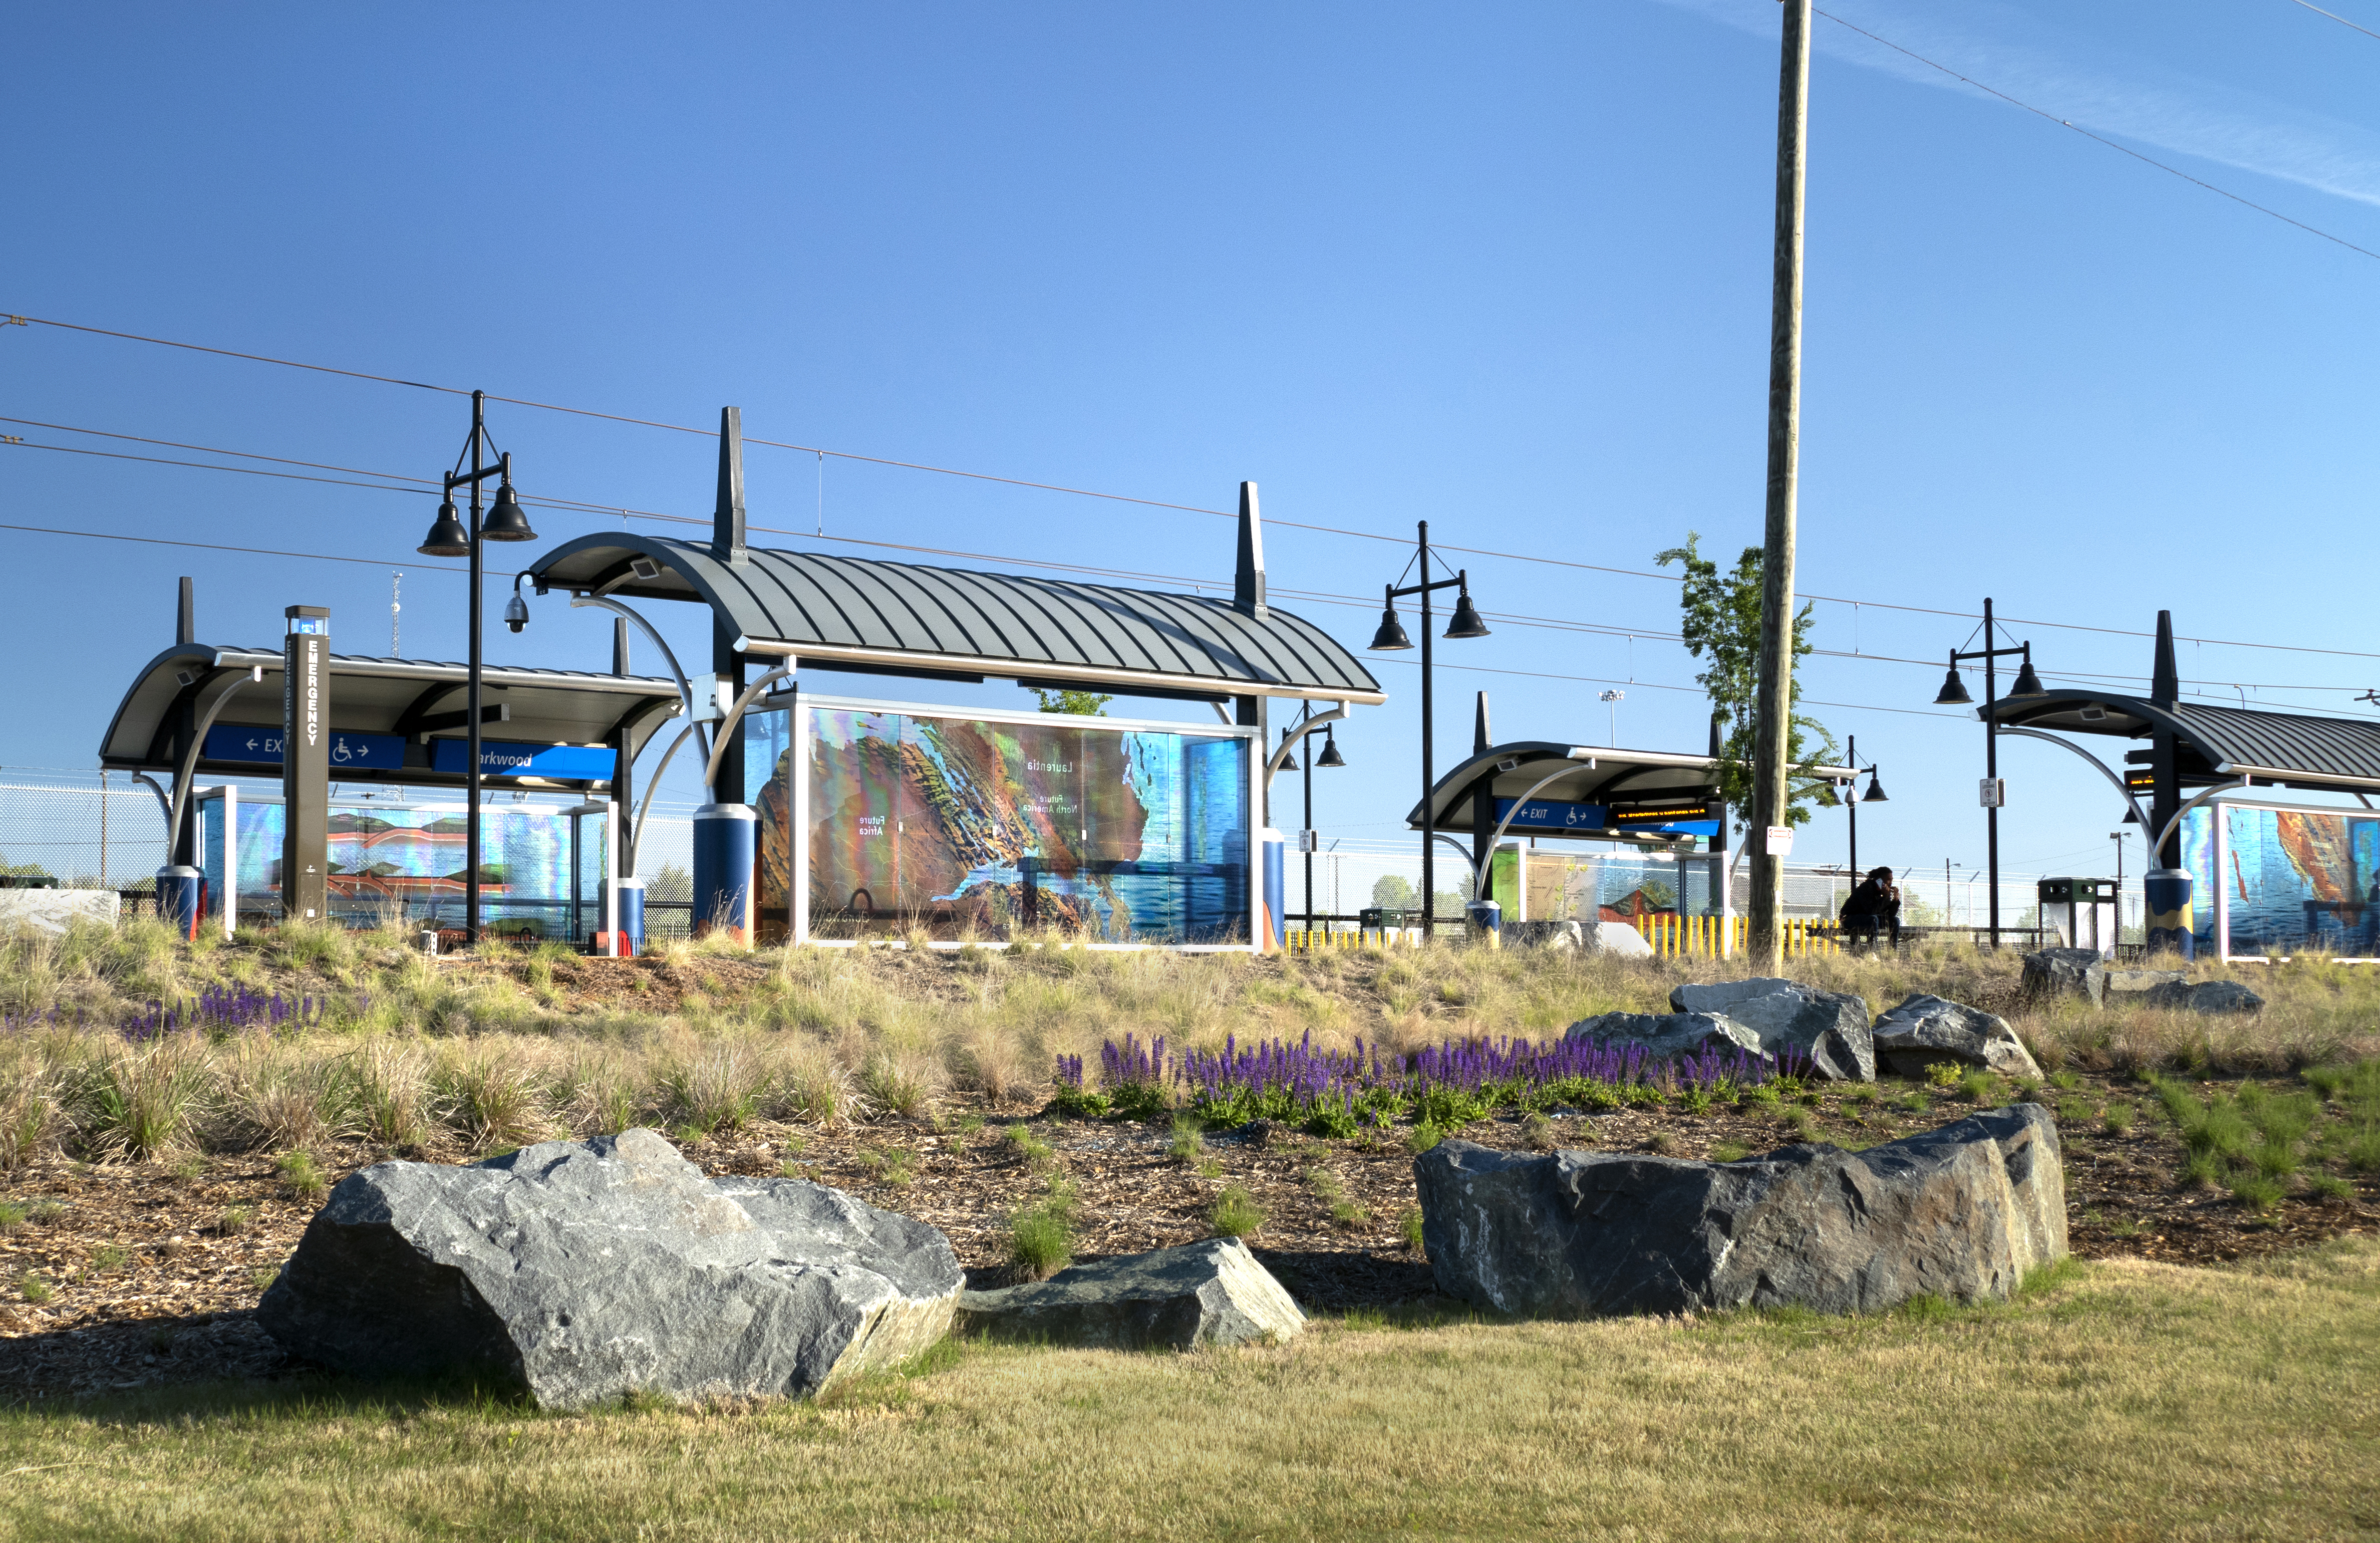 Landscape art at parkwood rail platform